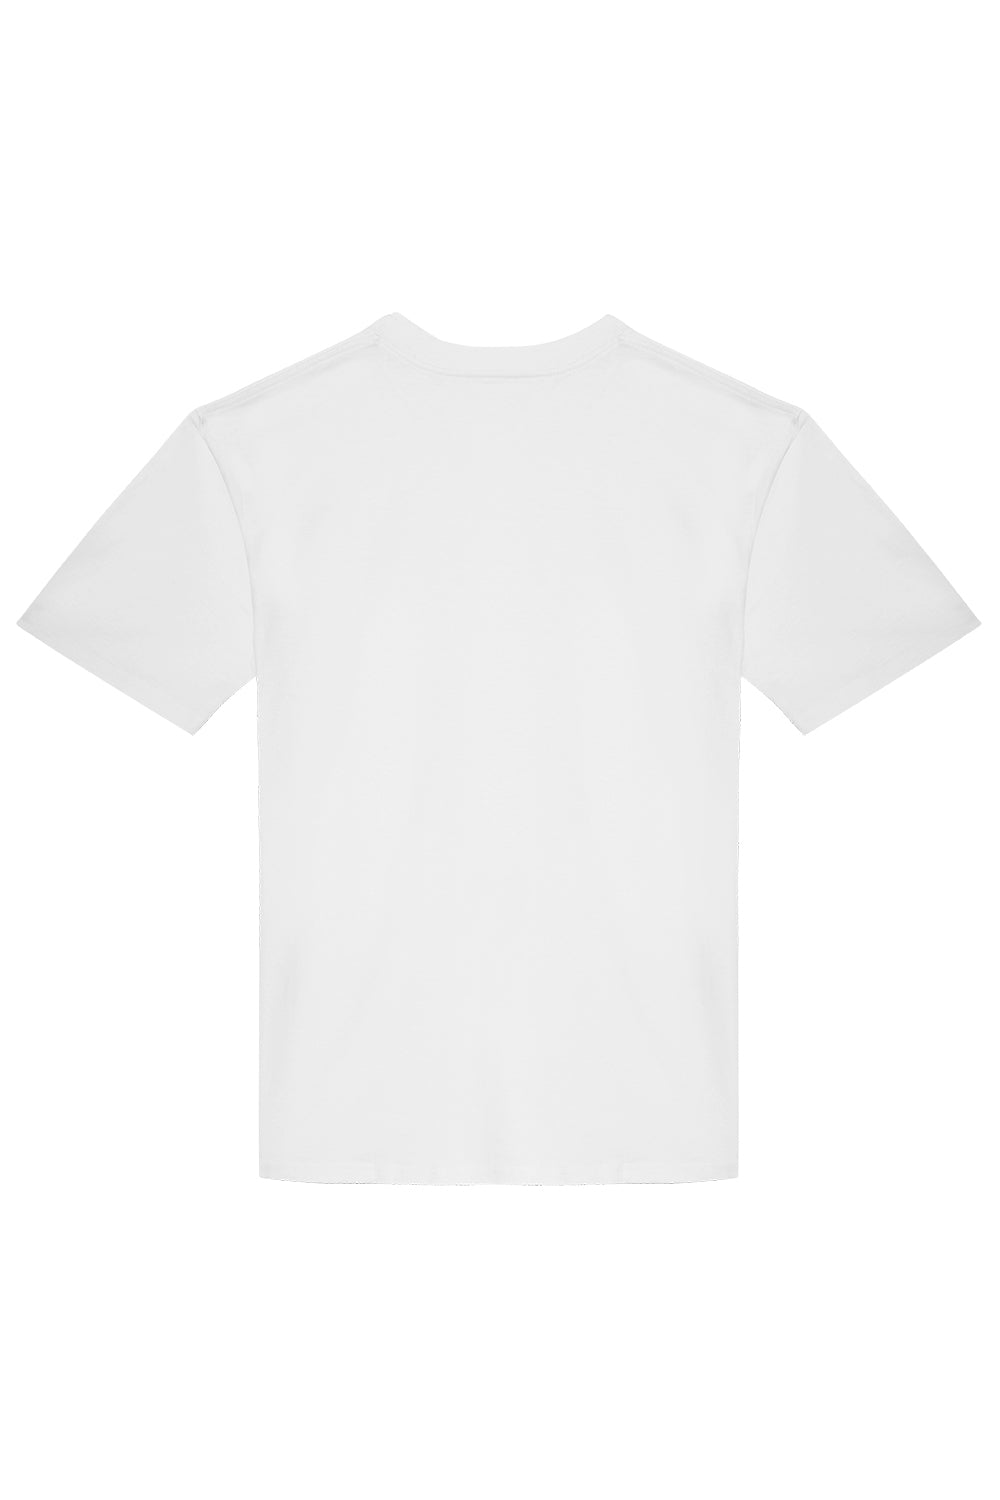 T-Shirt Slyde White